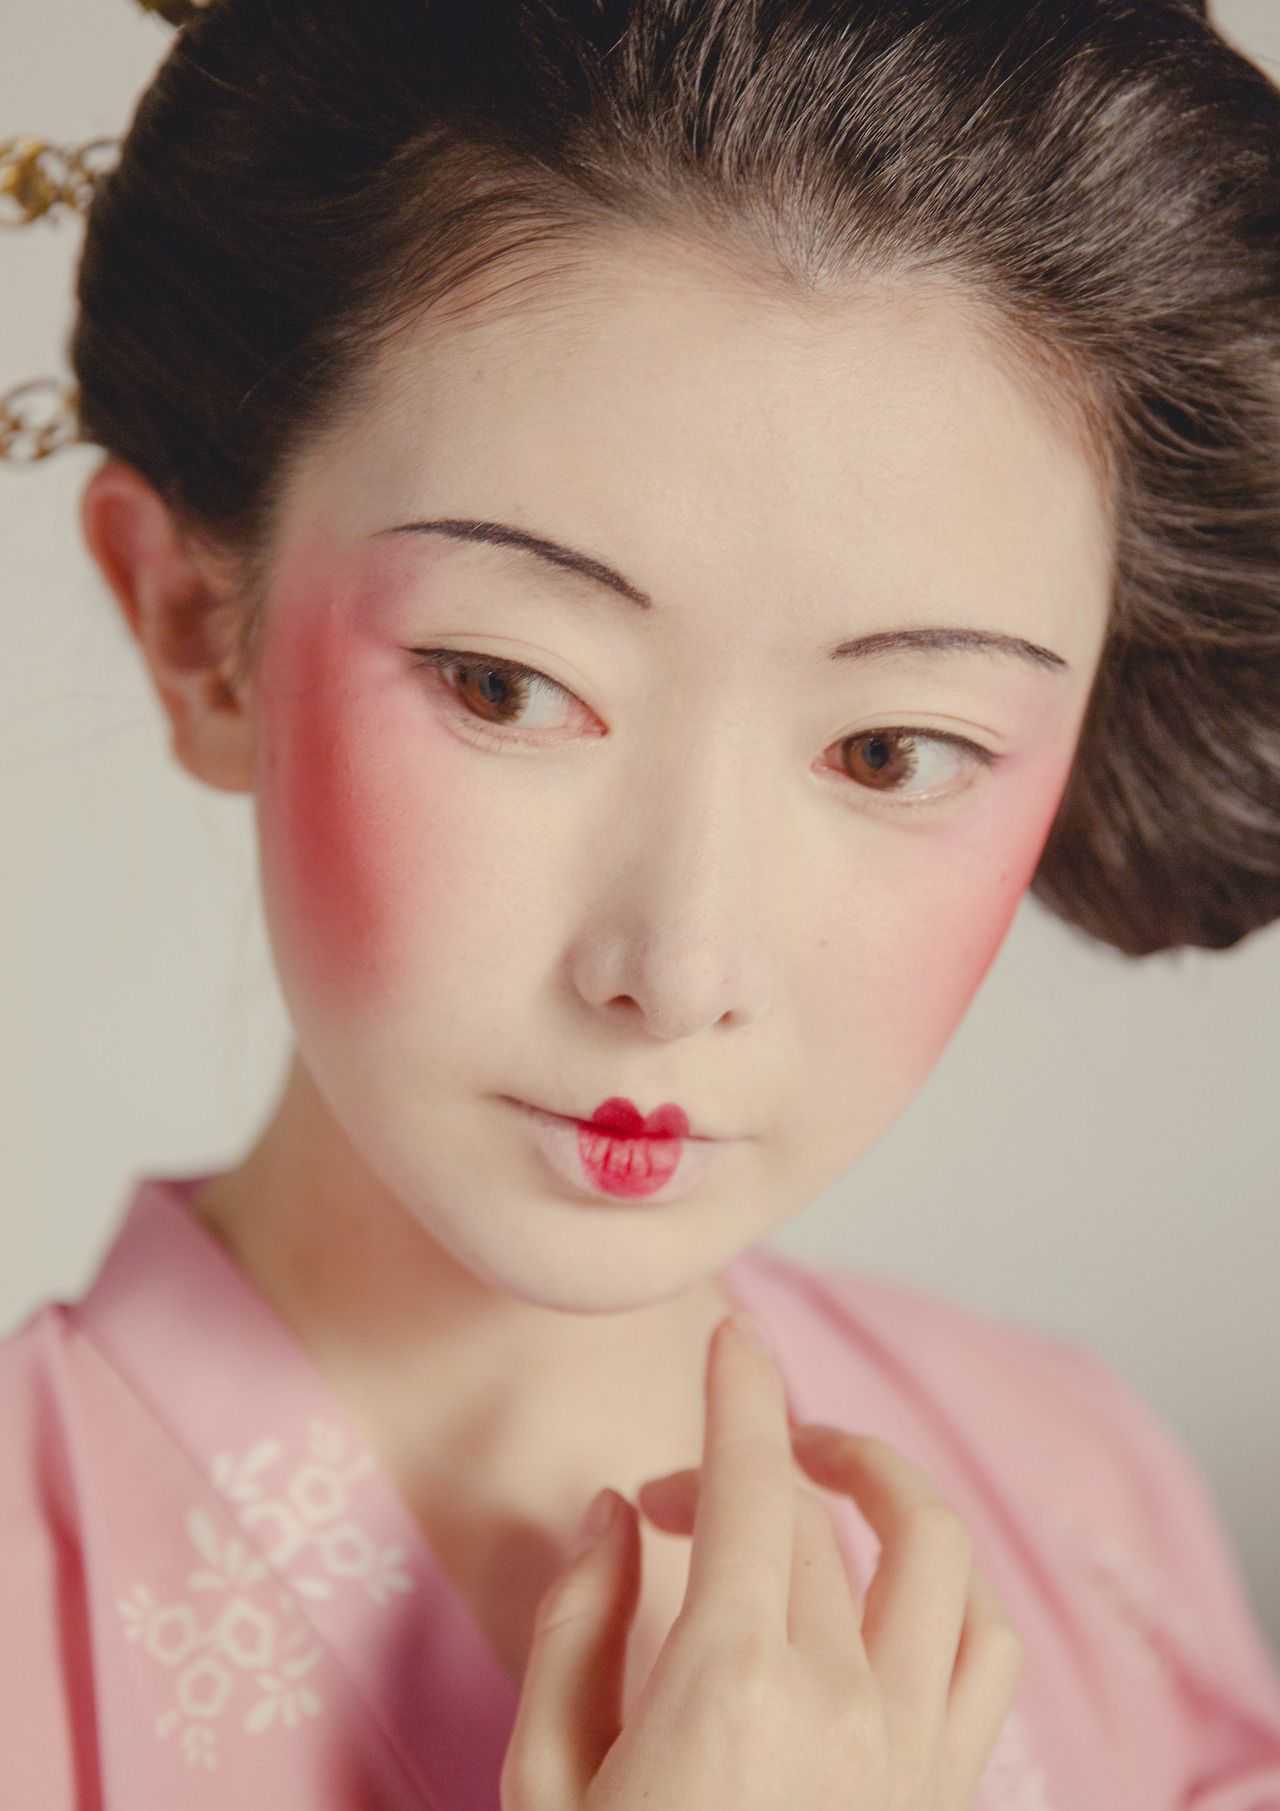 Макияж гейши, искусство японского соблазнения